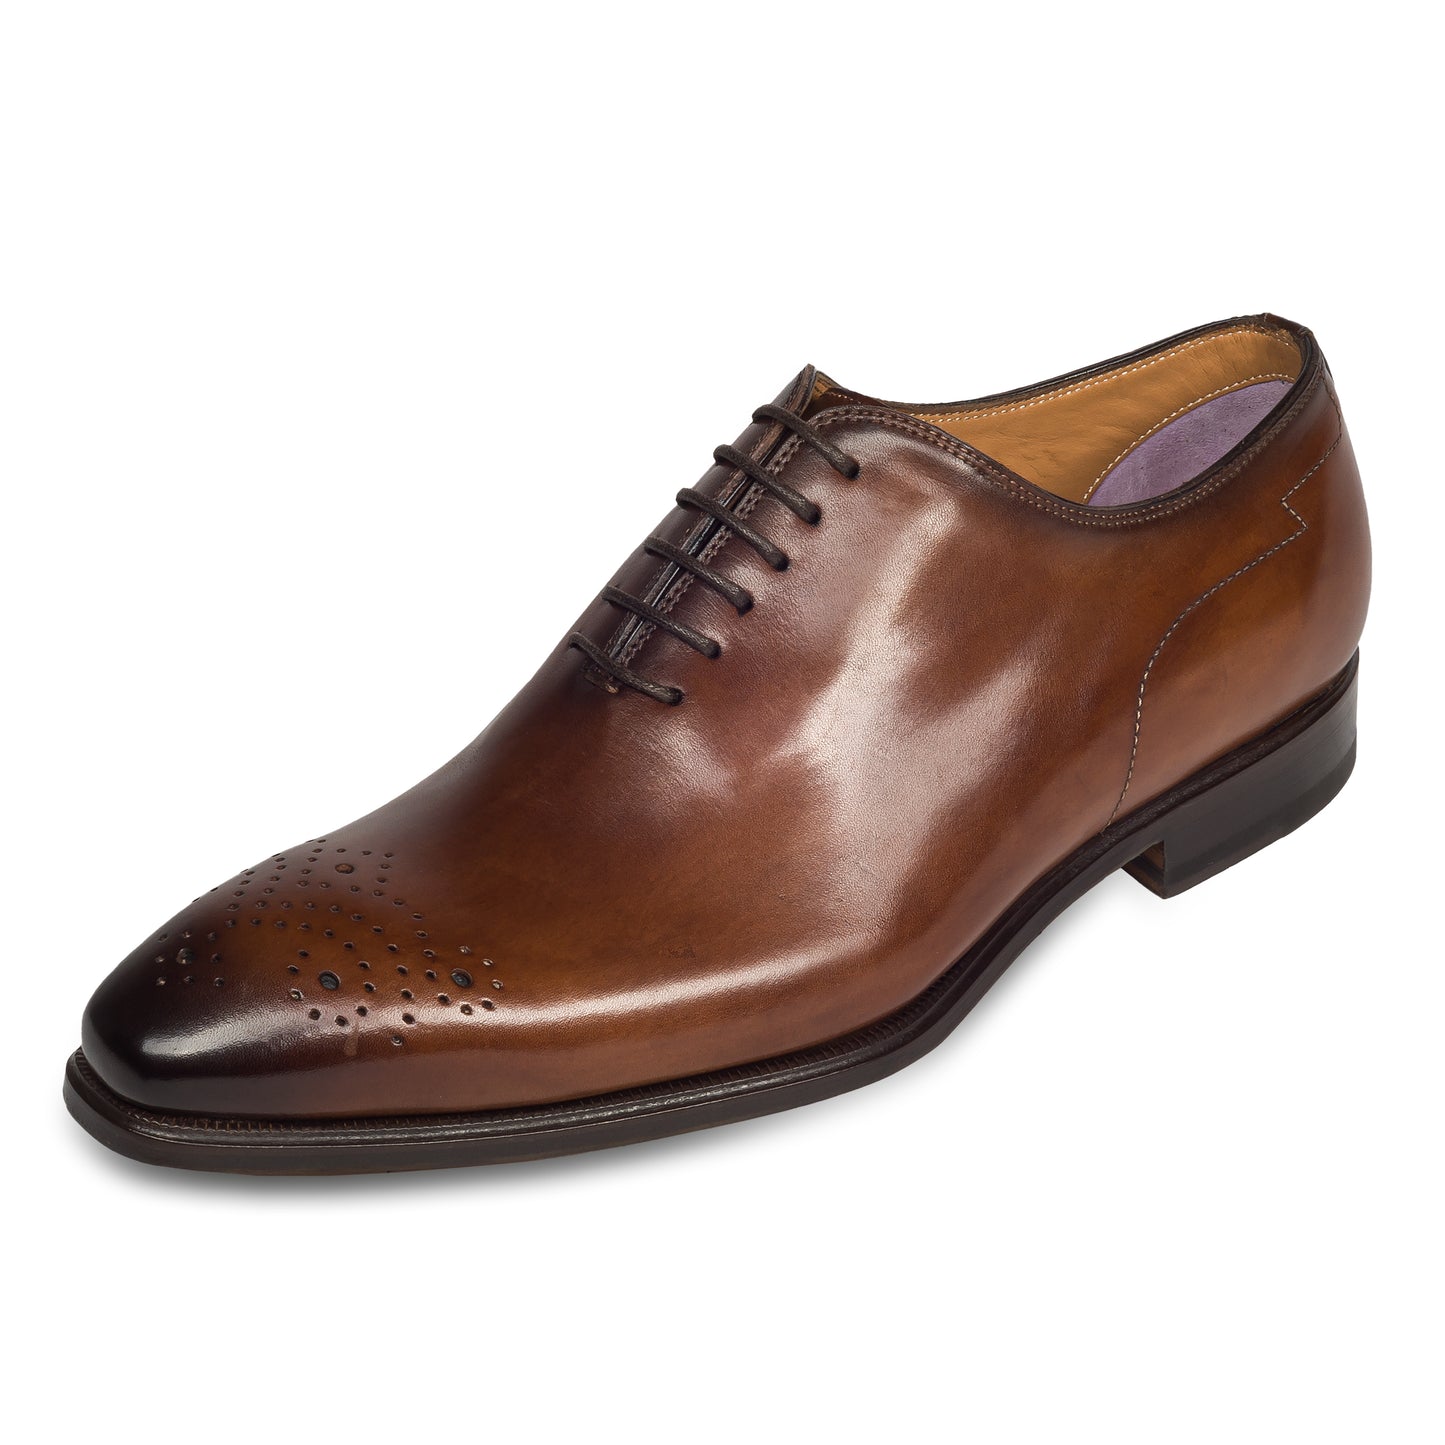 Branchini - Italienische Herren Anzugschuhe Oxford / Onecut in braun. Aus Kalbsleder handgefertigt und durchgenäht. Schräge Ansicht linker Schuh.